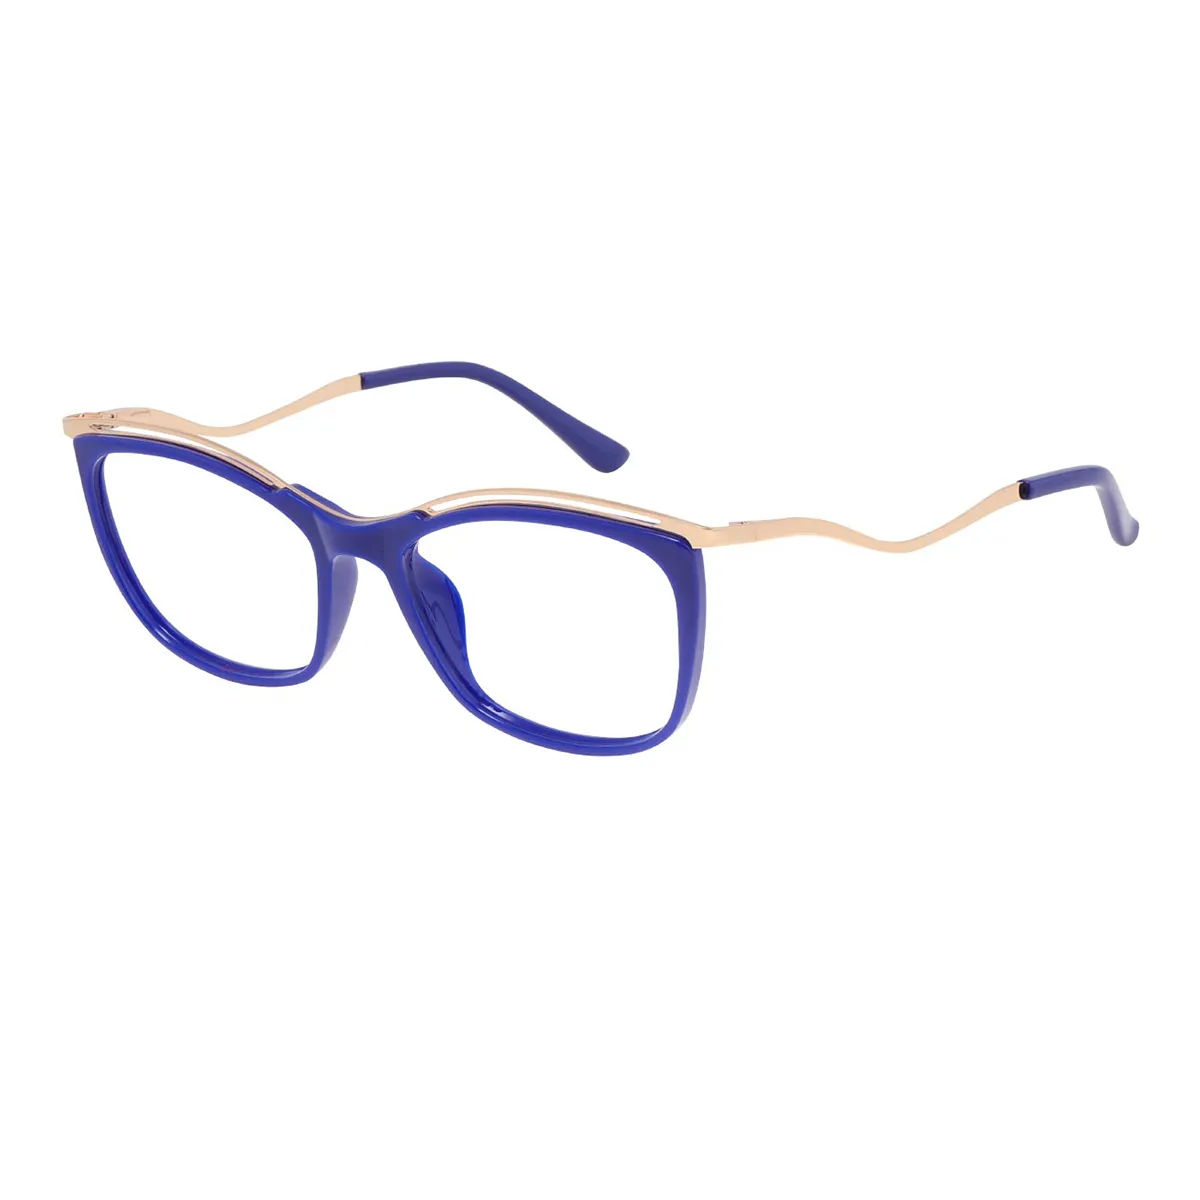 Kimberley - Square Blue Glasses for Women - EFE